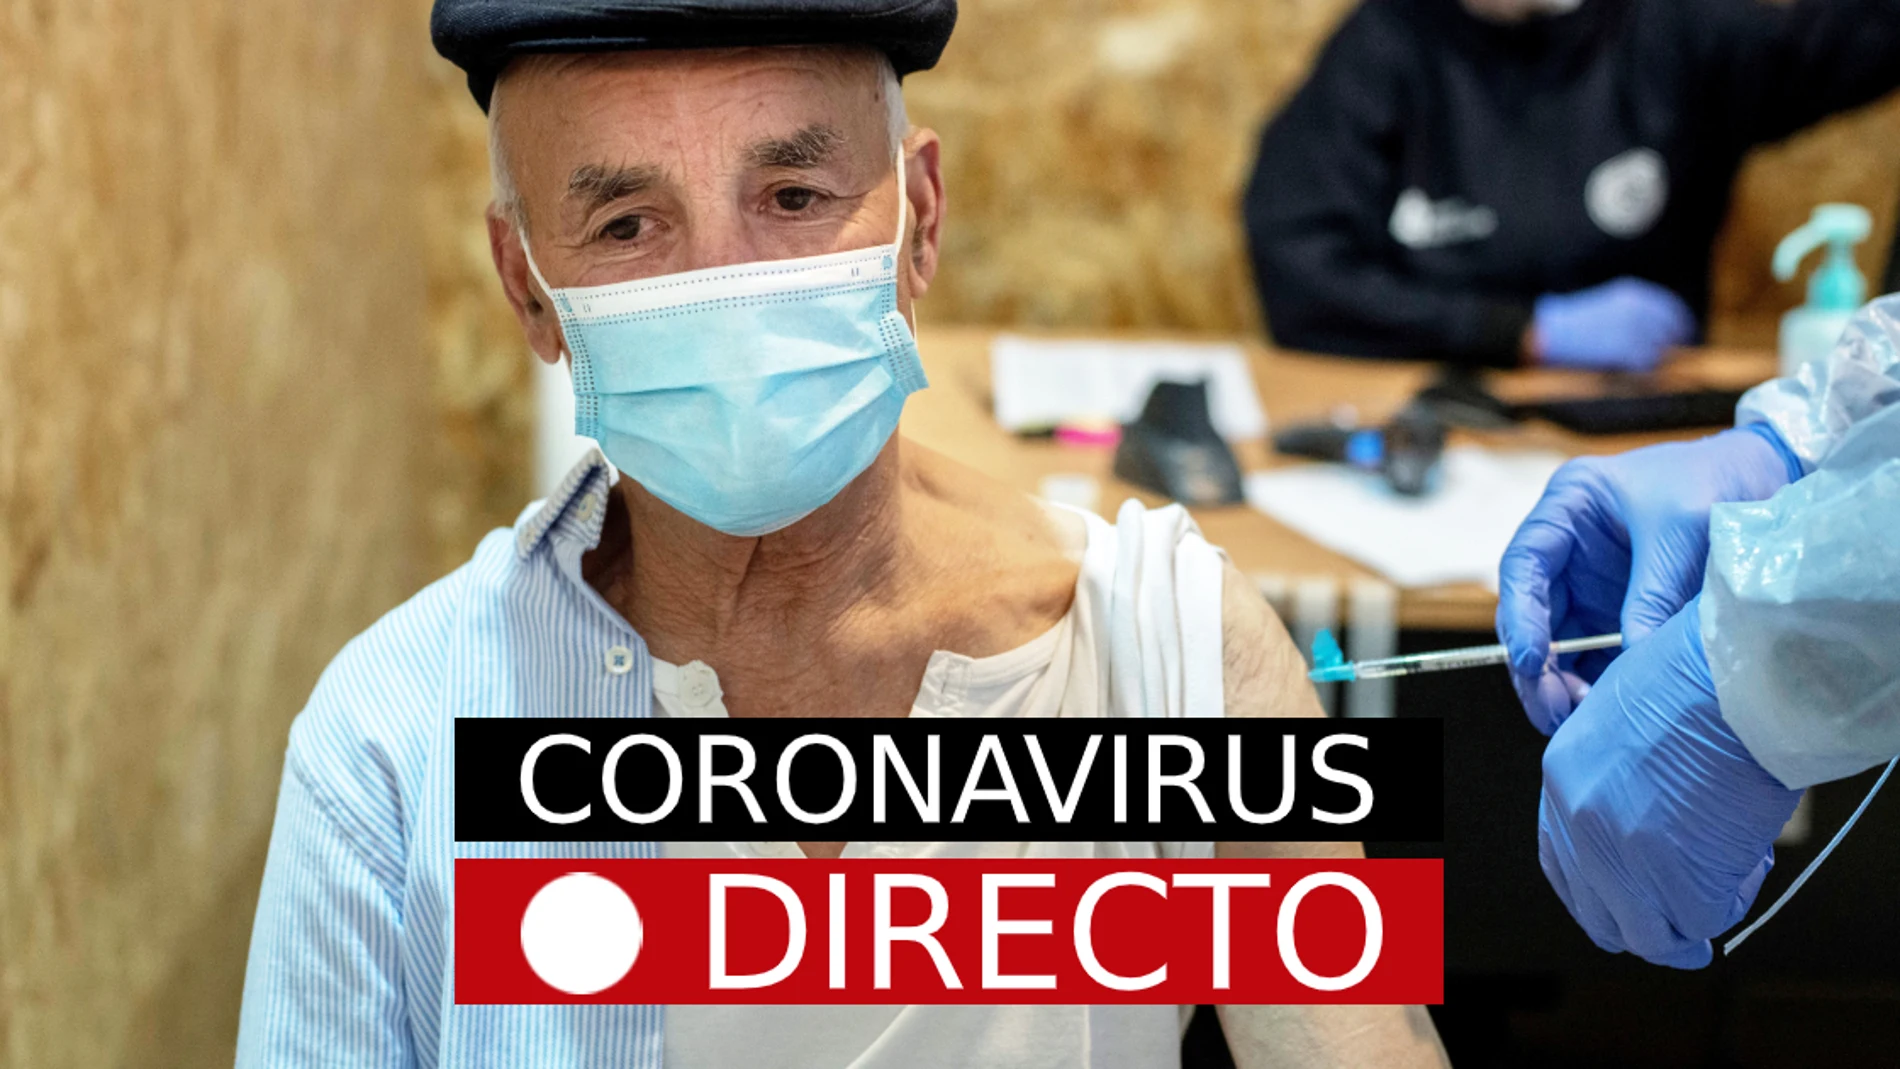 La última hora de la pandemia de coronavirus, en directo en laSexta